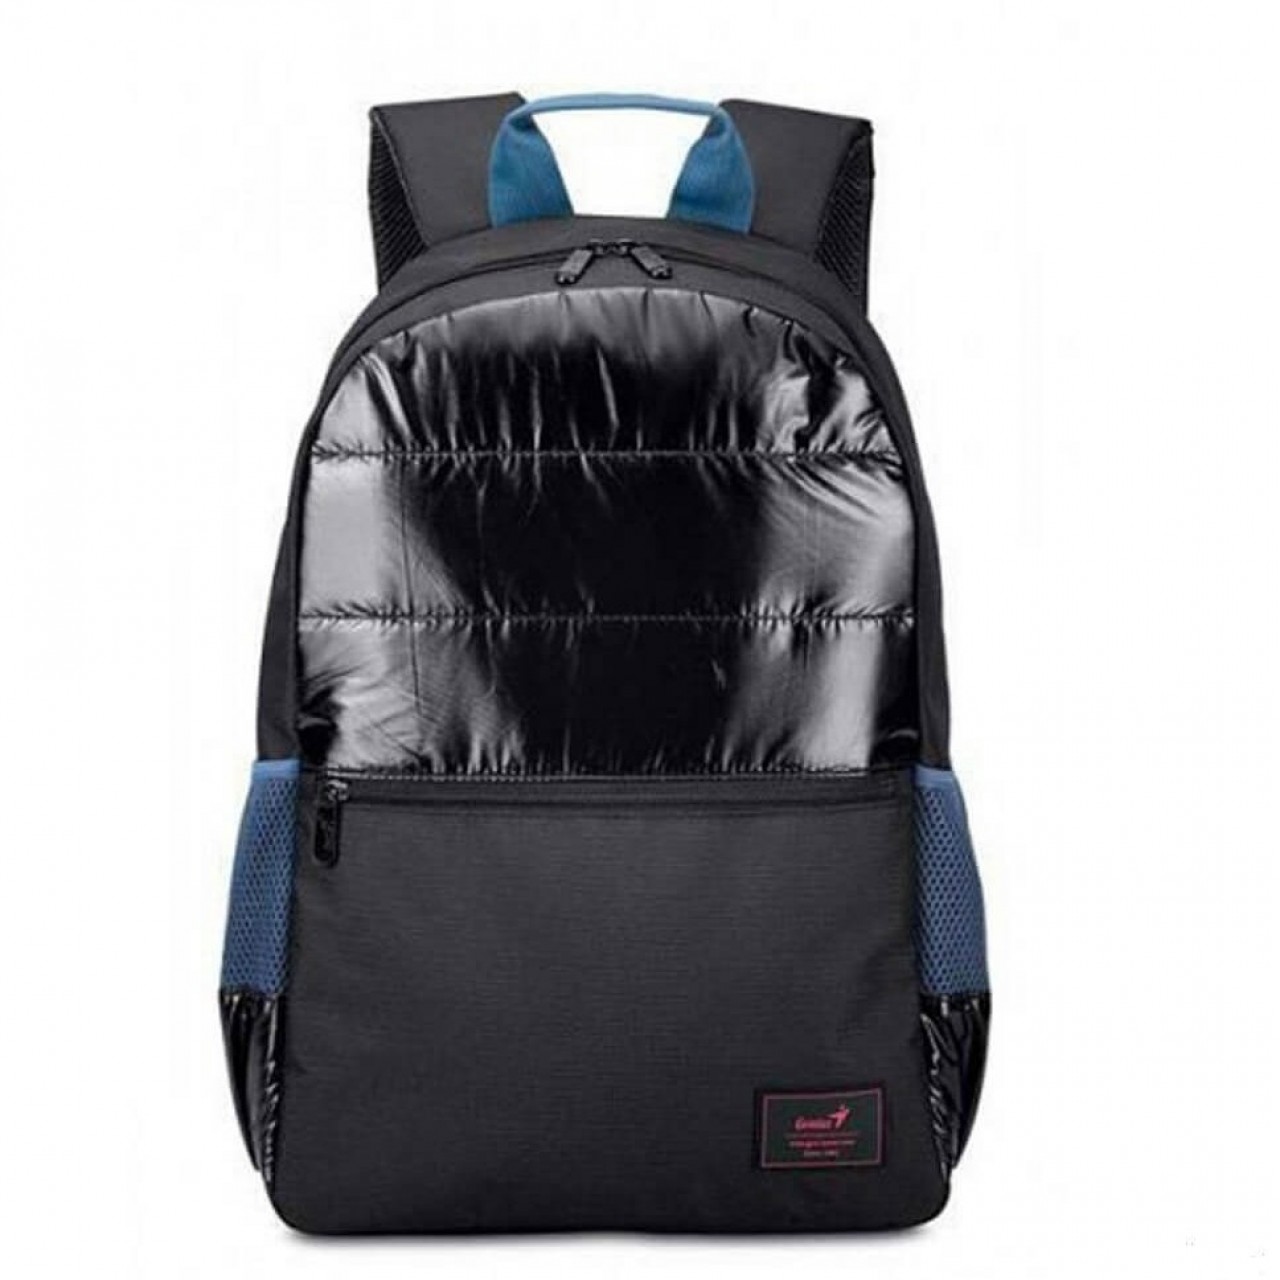 30. Genius Laptop Backpack GB-1521 – Storage Pocket – Adjustable Shoulder Strap